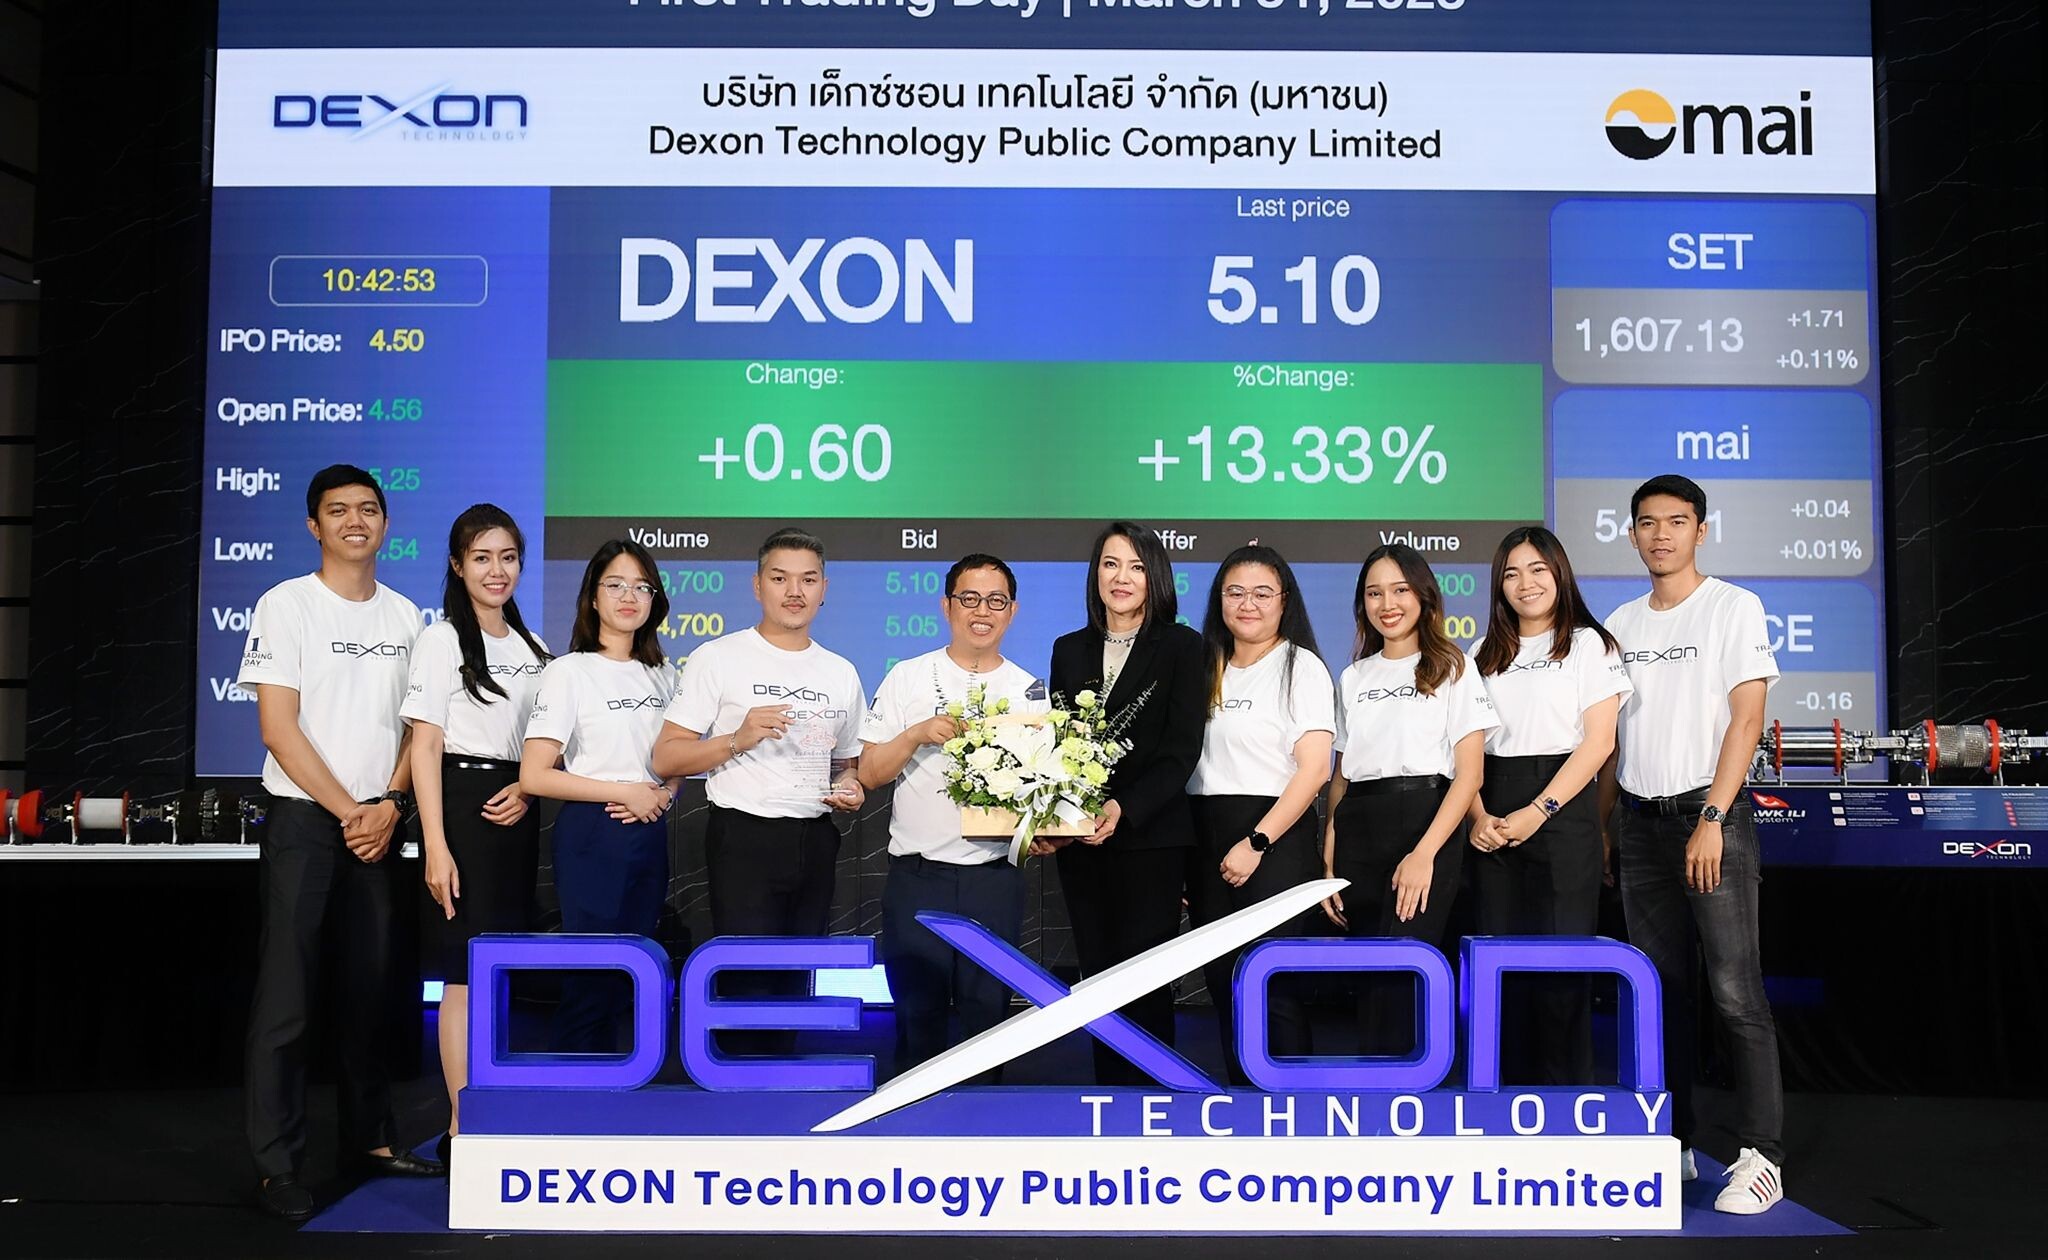 "GRB-TWC" ร่วมแสดงความยินดีกับ DEXON เข้าเทรดวันแรกในตลาดหลักทรัพย์ mai